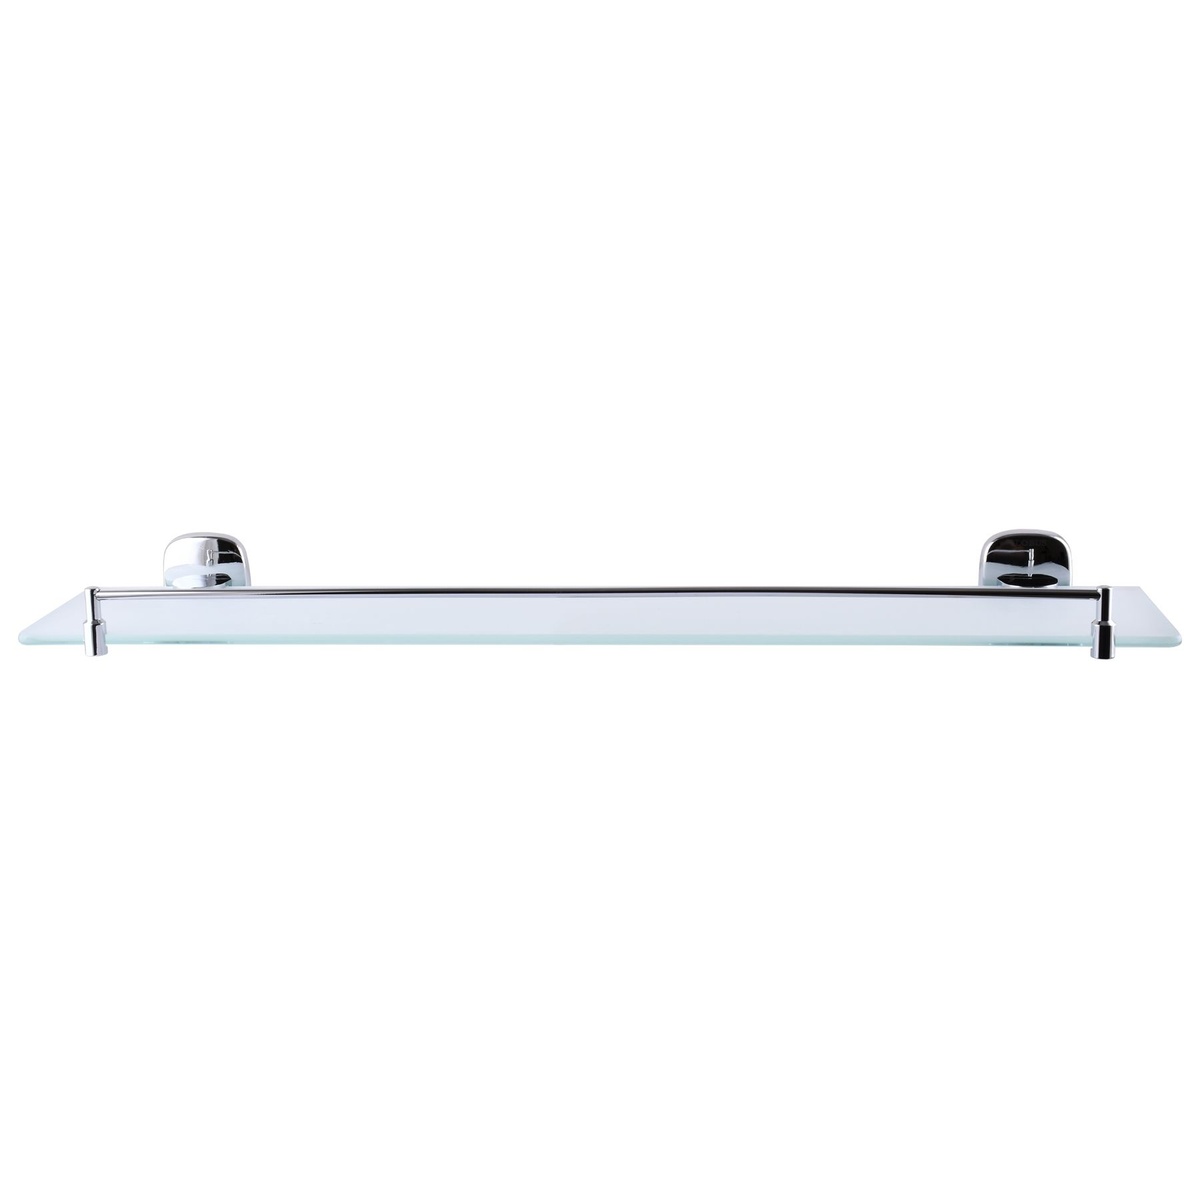 Полиця настінна скляна для ванної GLOBUS LUX RM 1702 хром пряма 000021386